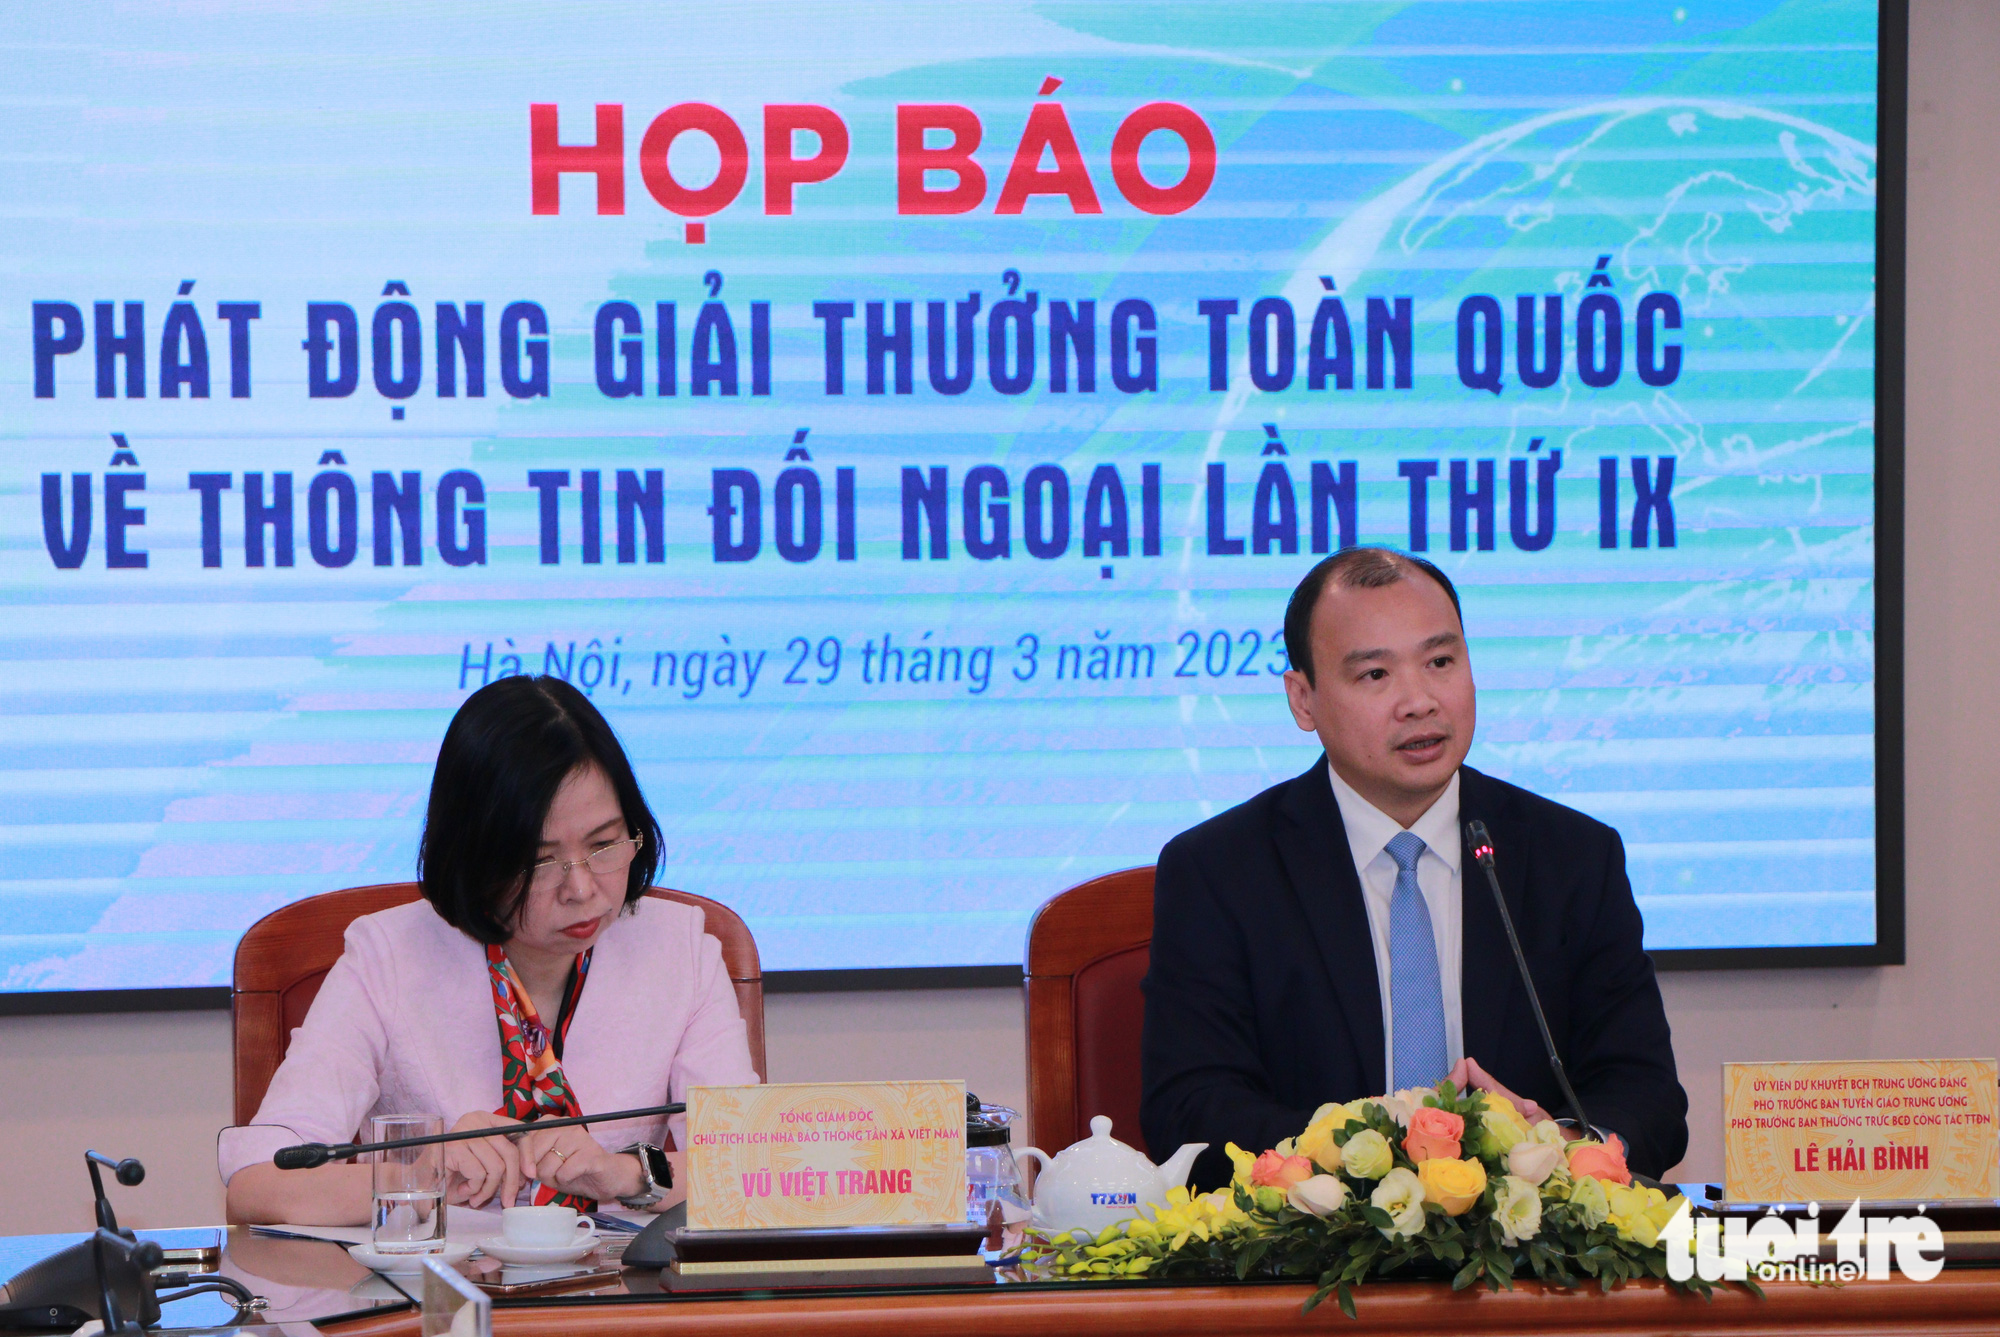 Giải thông tin đối ngoại hoan nghênh những ca sĩ giúp thế giới thêm yêu Việt Nam - Ảnh 1.